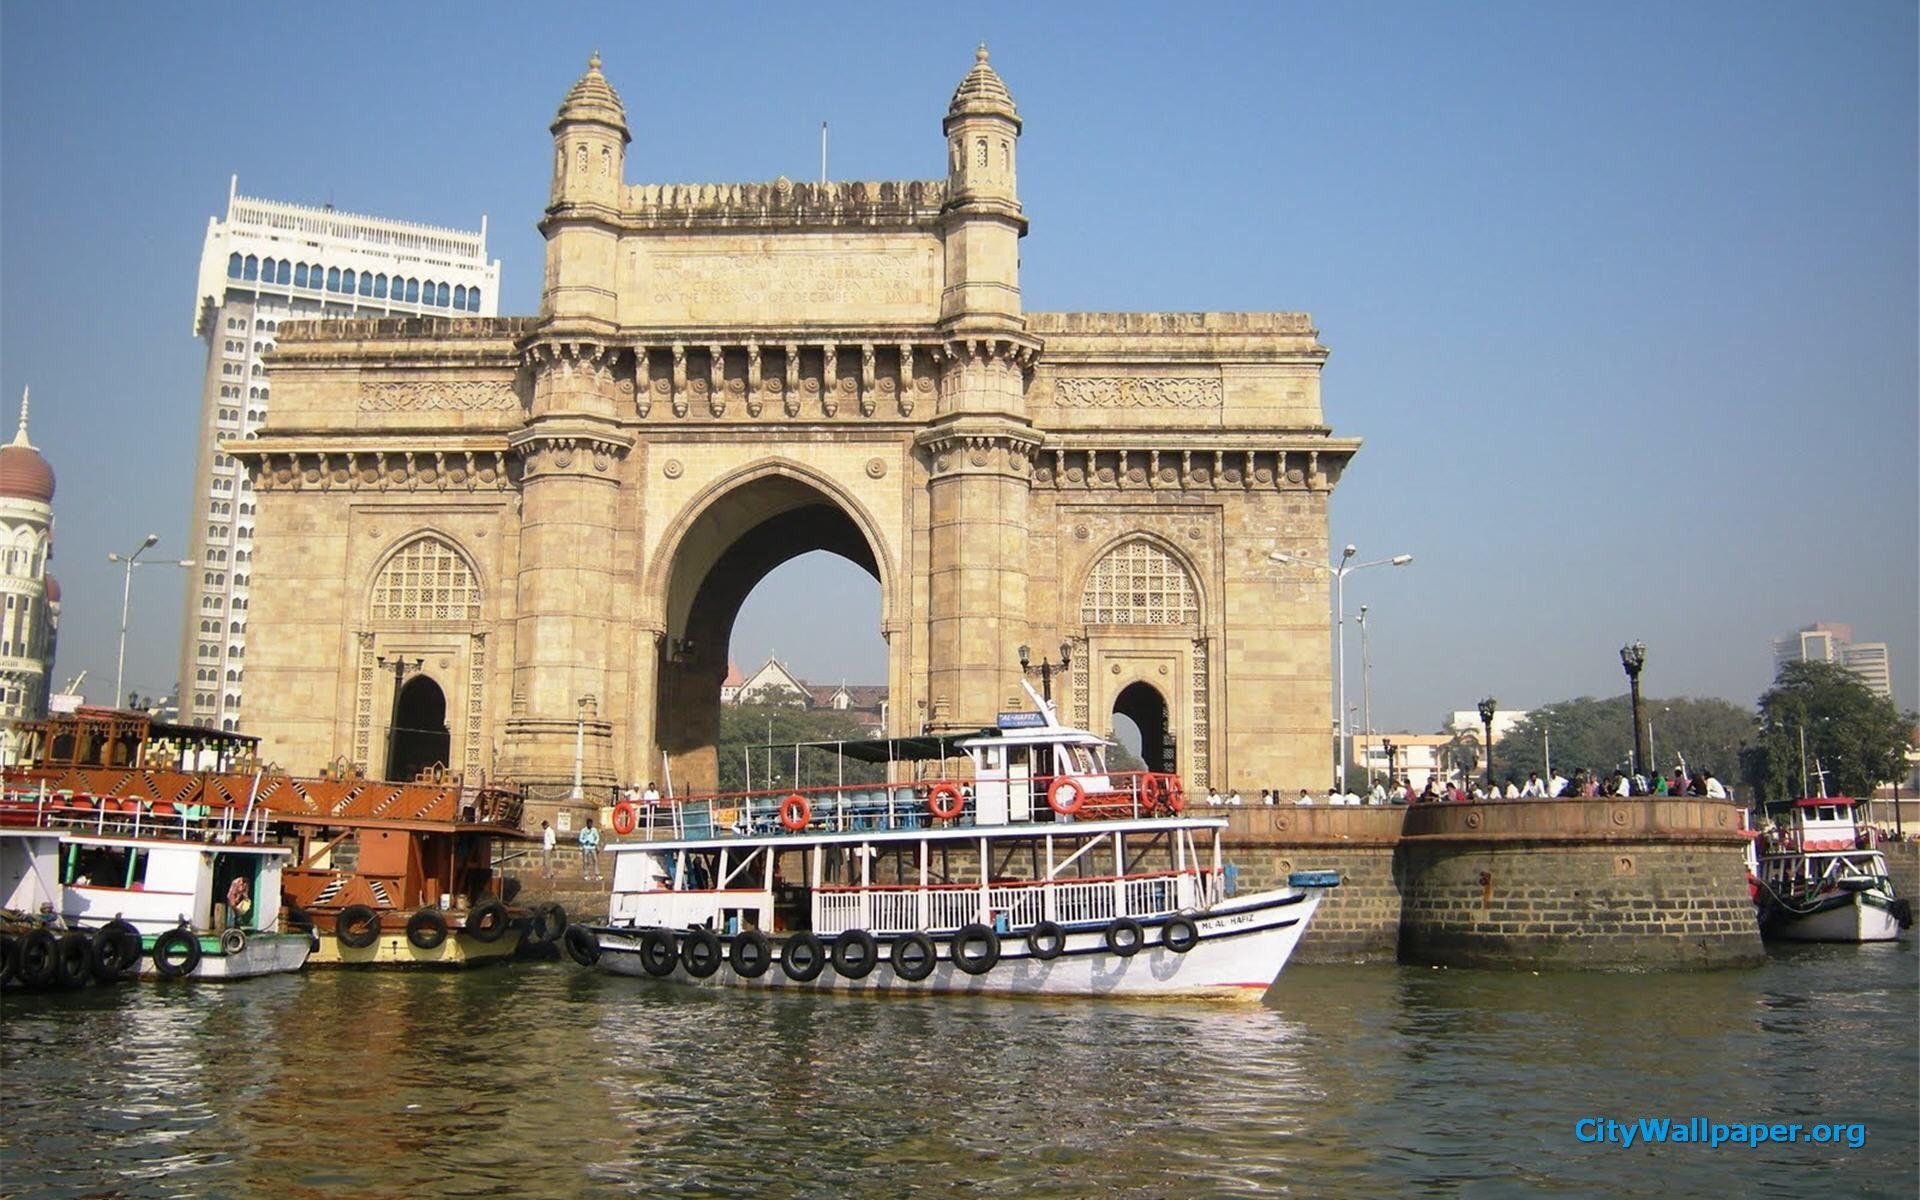 mumbai city wallpaper,landmark,arch bridge,waterway,architecture,historic site